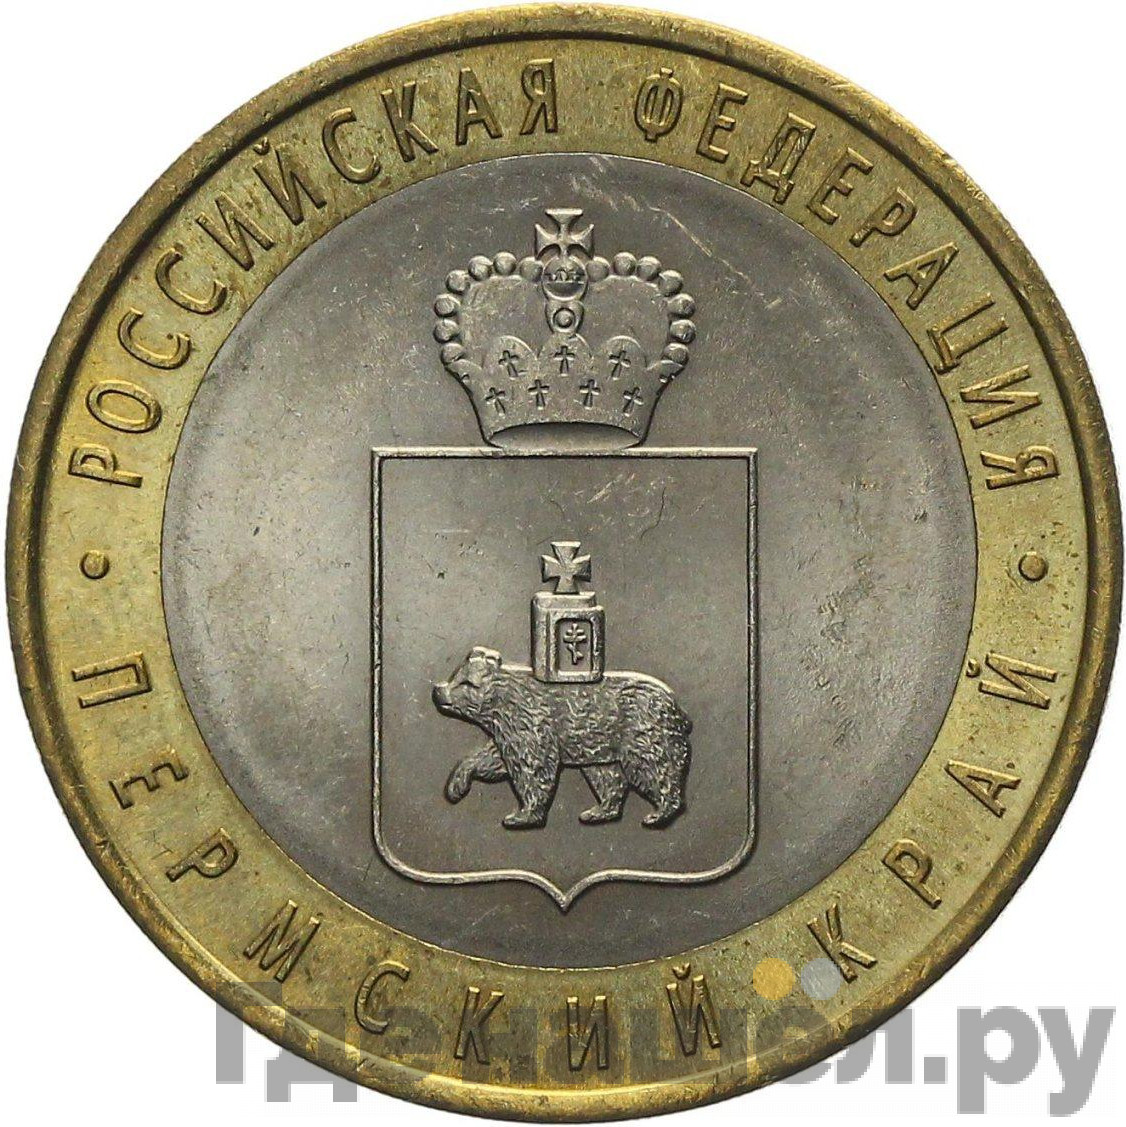 10 рублей 2010 года СПМД Российская Федерация Пермский край